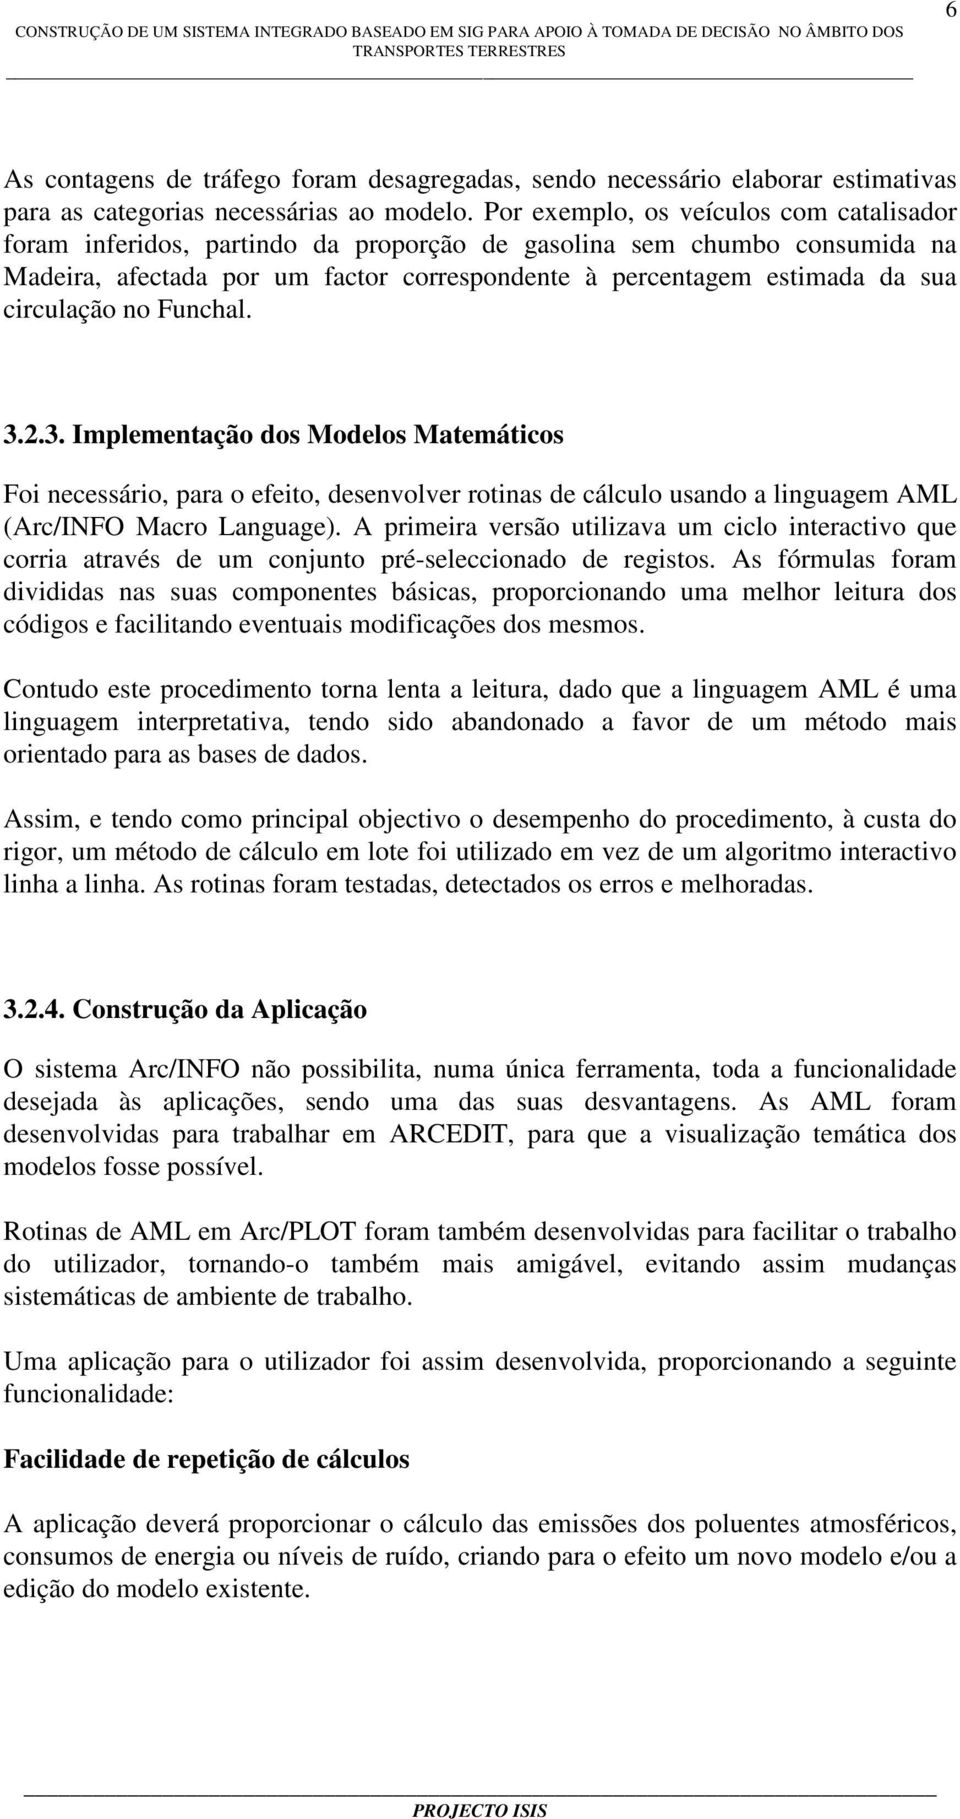 circulação no Funchal. 3.2.3. Implementação dos Modelos Matemáticos Foi necessário, para o efeito, desenvolver rotinas de cálculo usando a linguagem AML (Arc/INFO Macro Language).